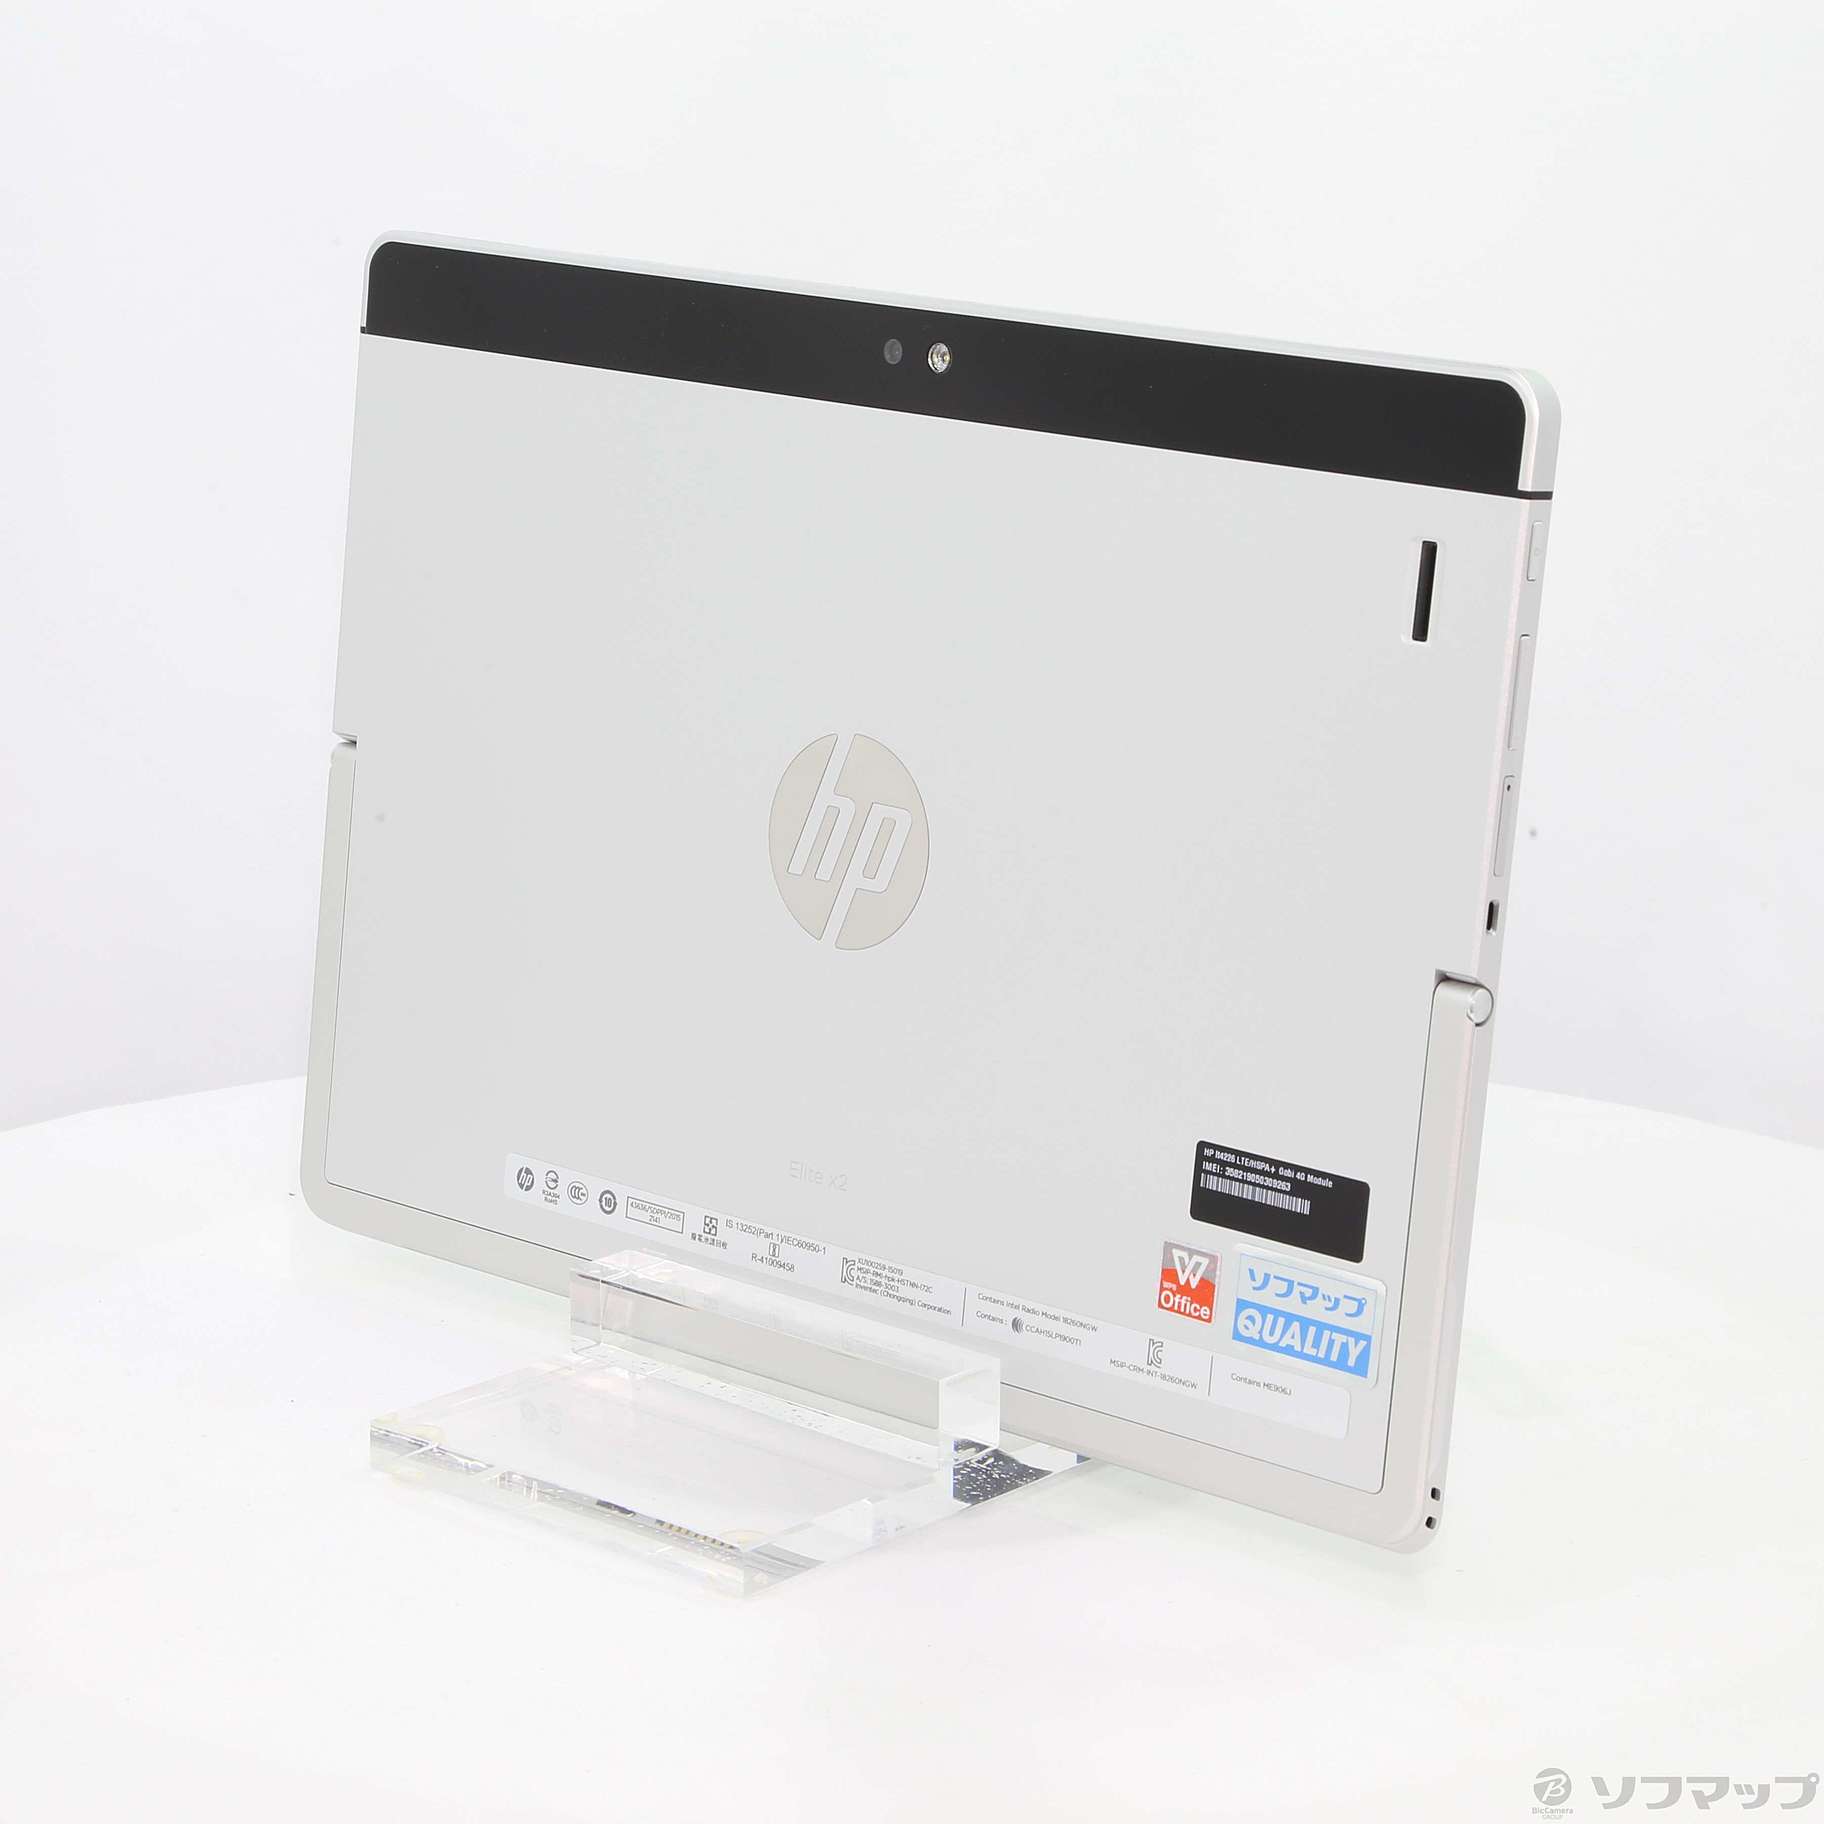 HP Elite x2 1012 G1 for DOCOMO V9D54PA#ABJ 〔Windows 10〕